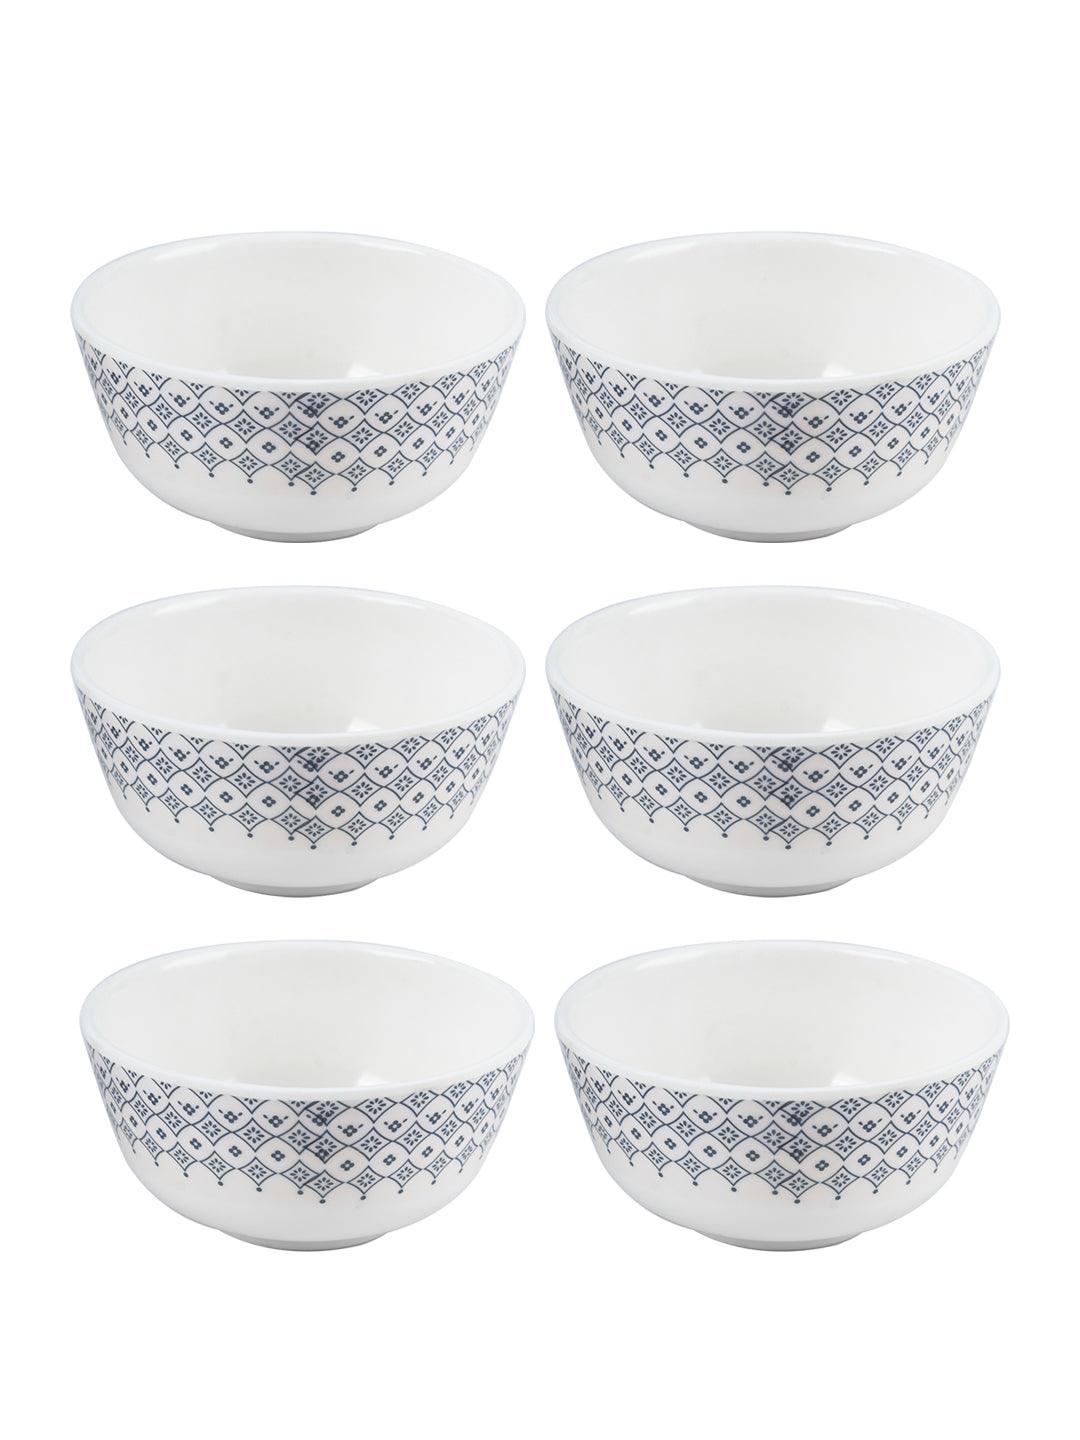 VON CASA Melamine Round Soup Bowl - Set of 6, White